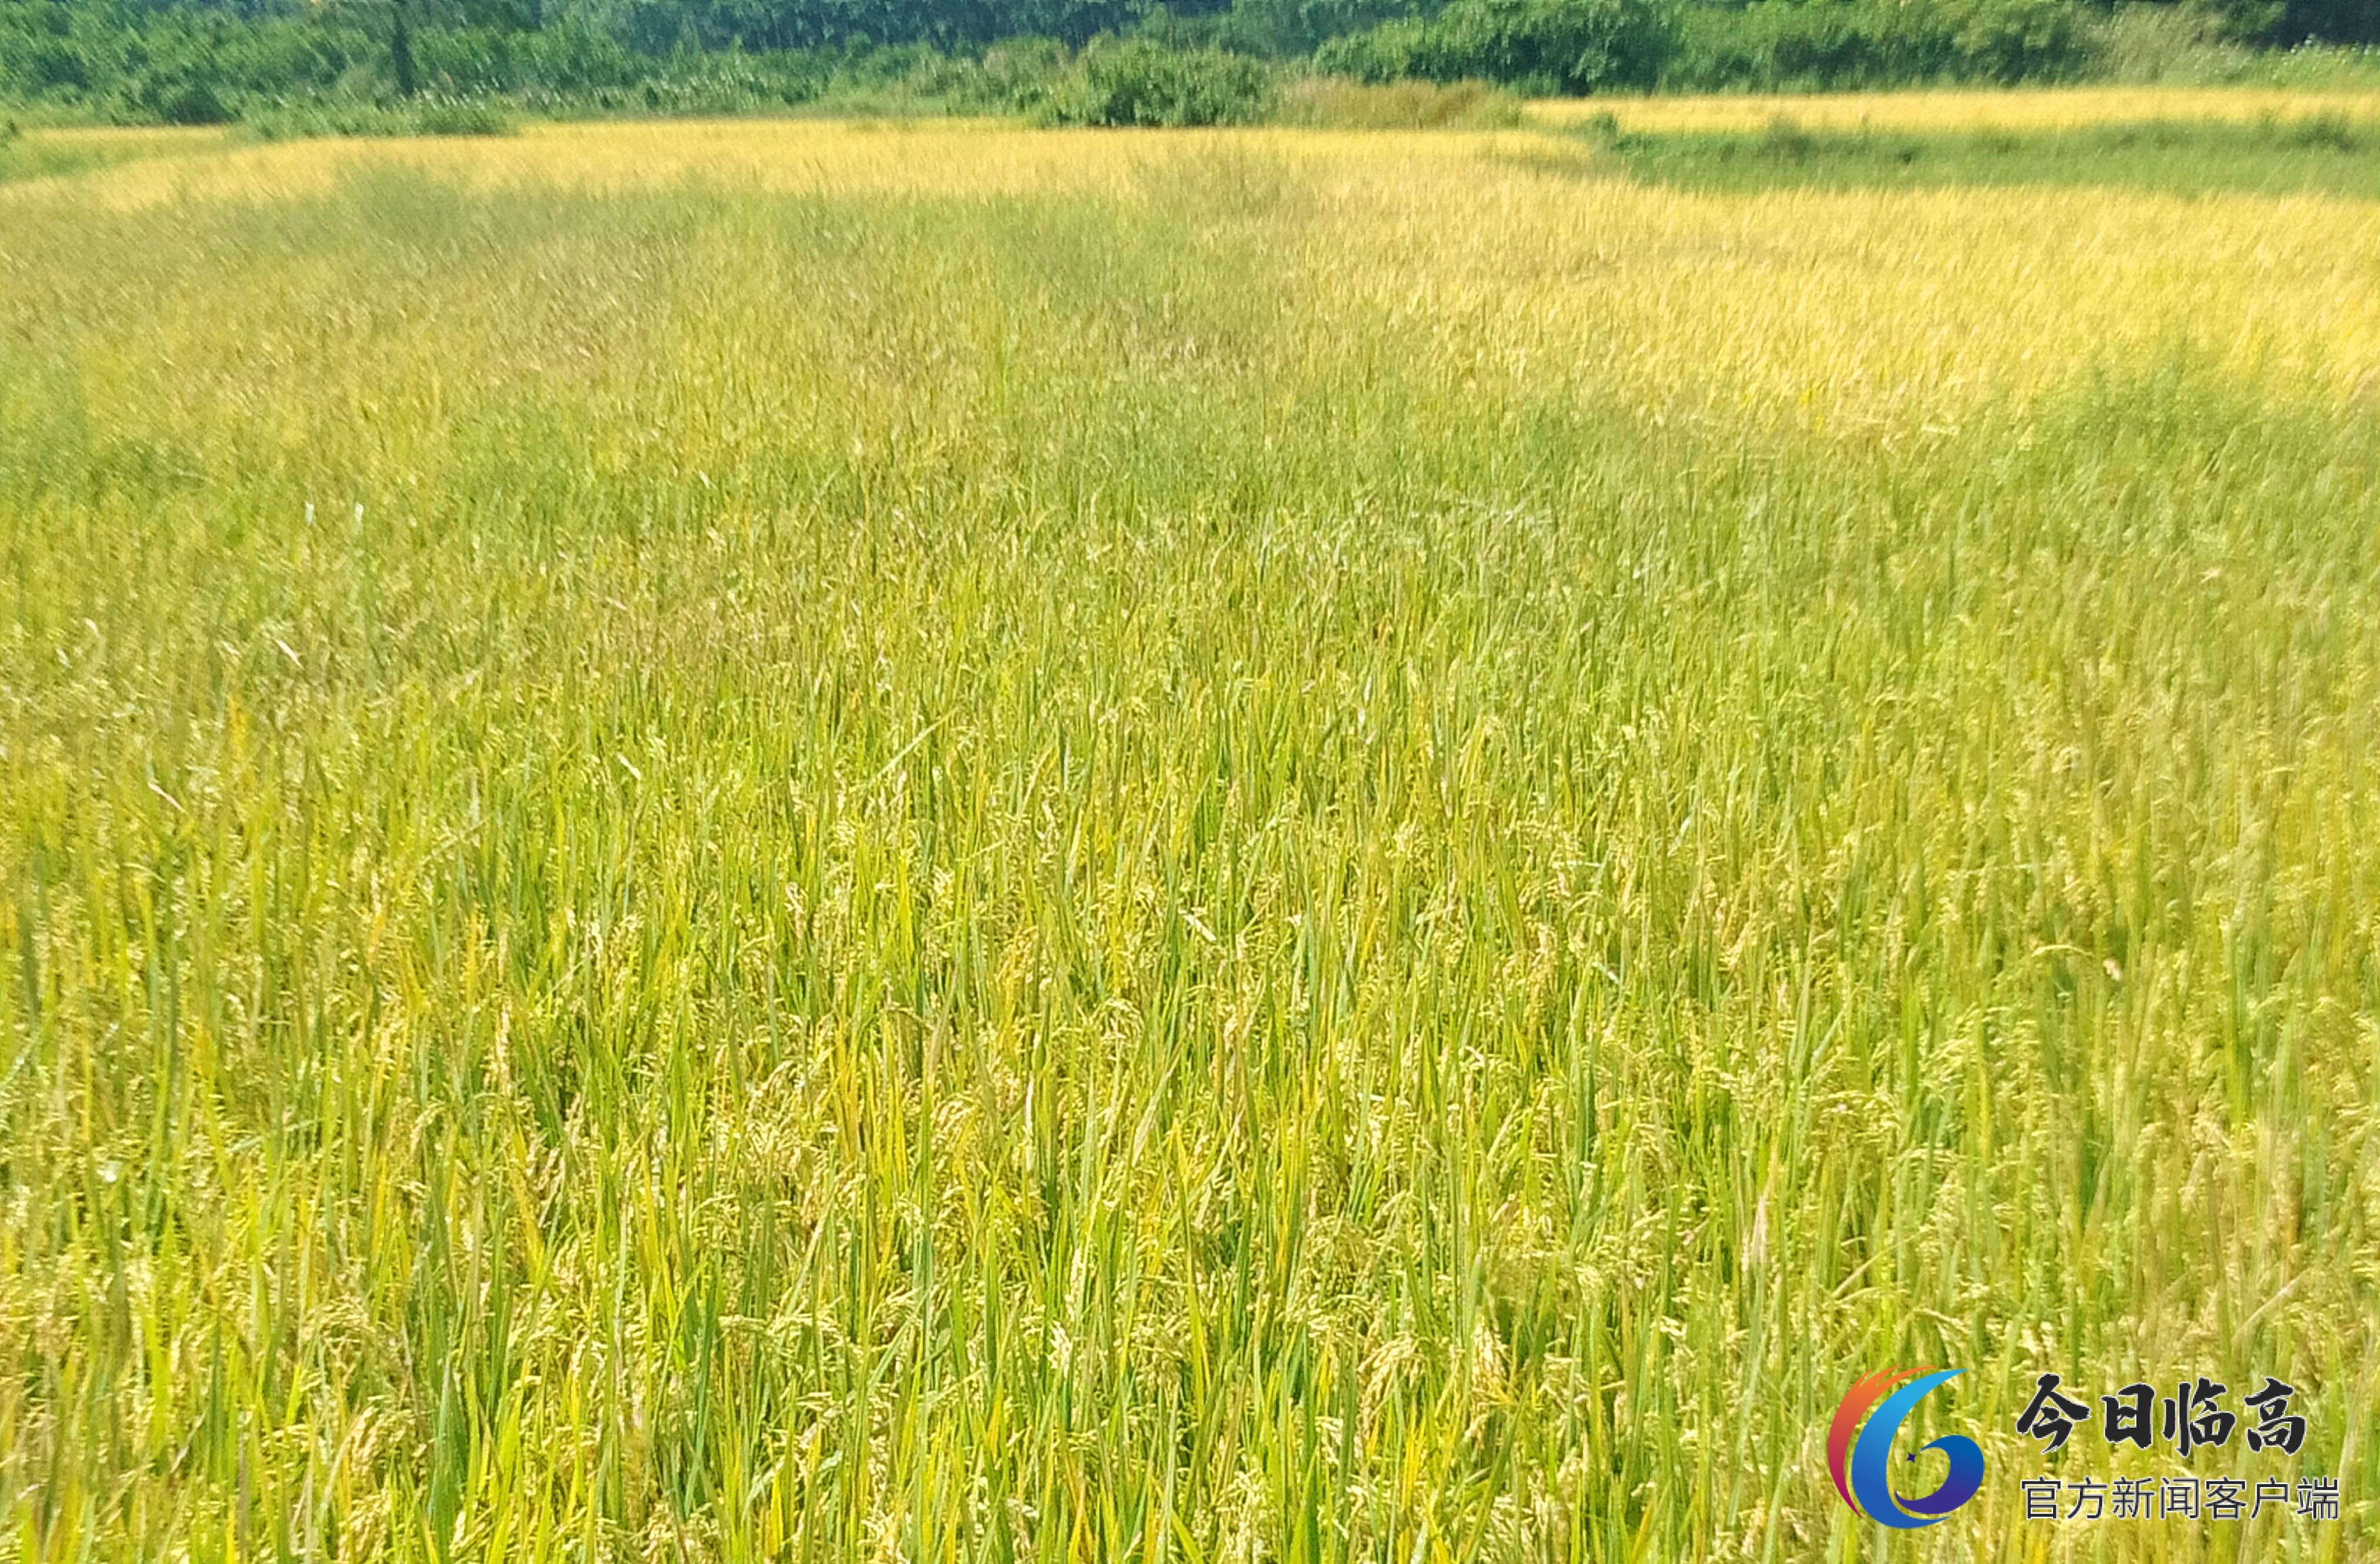 多文镇头龙村早稻红米喜获丰收 新模式发展红米产业初告成功3.jpeg